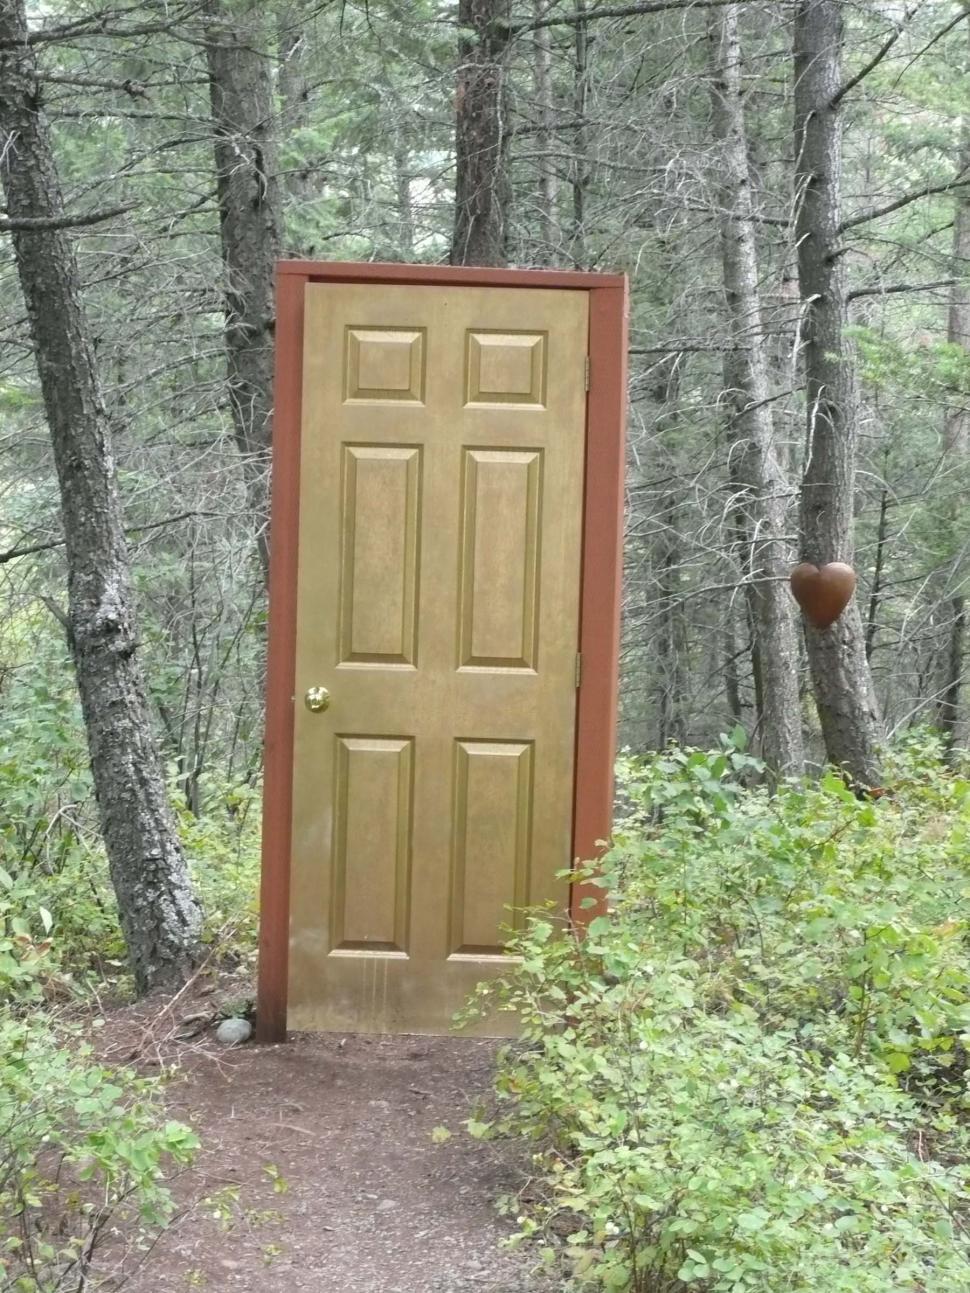 Free Image of Door In Woods 